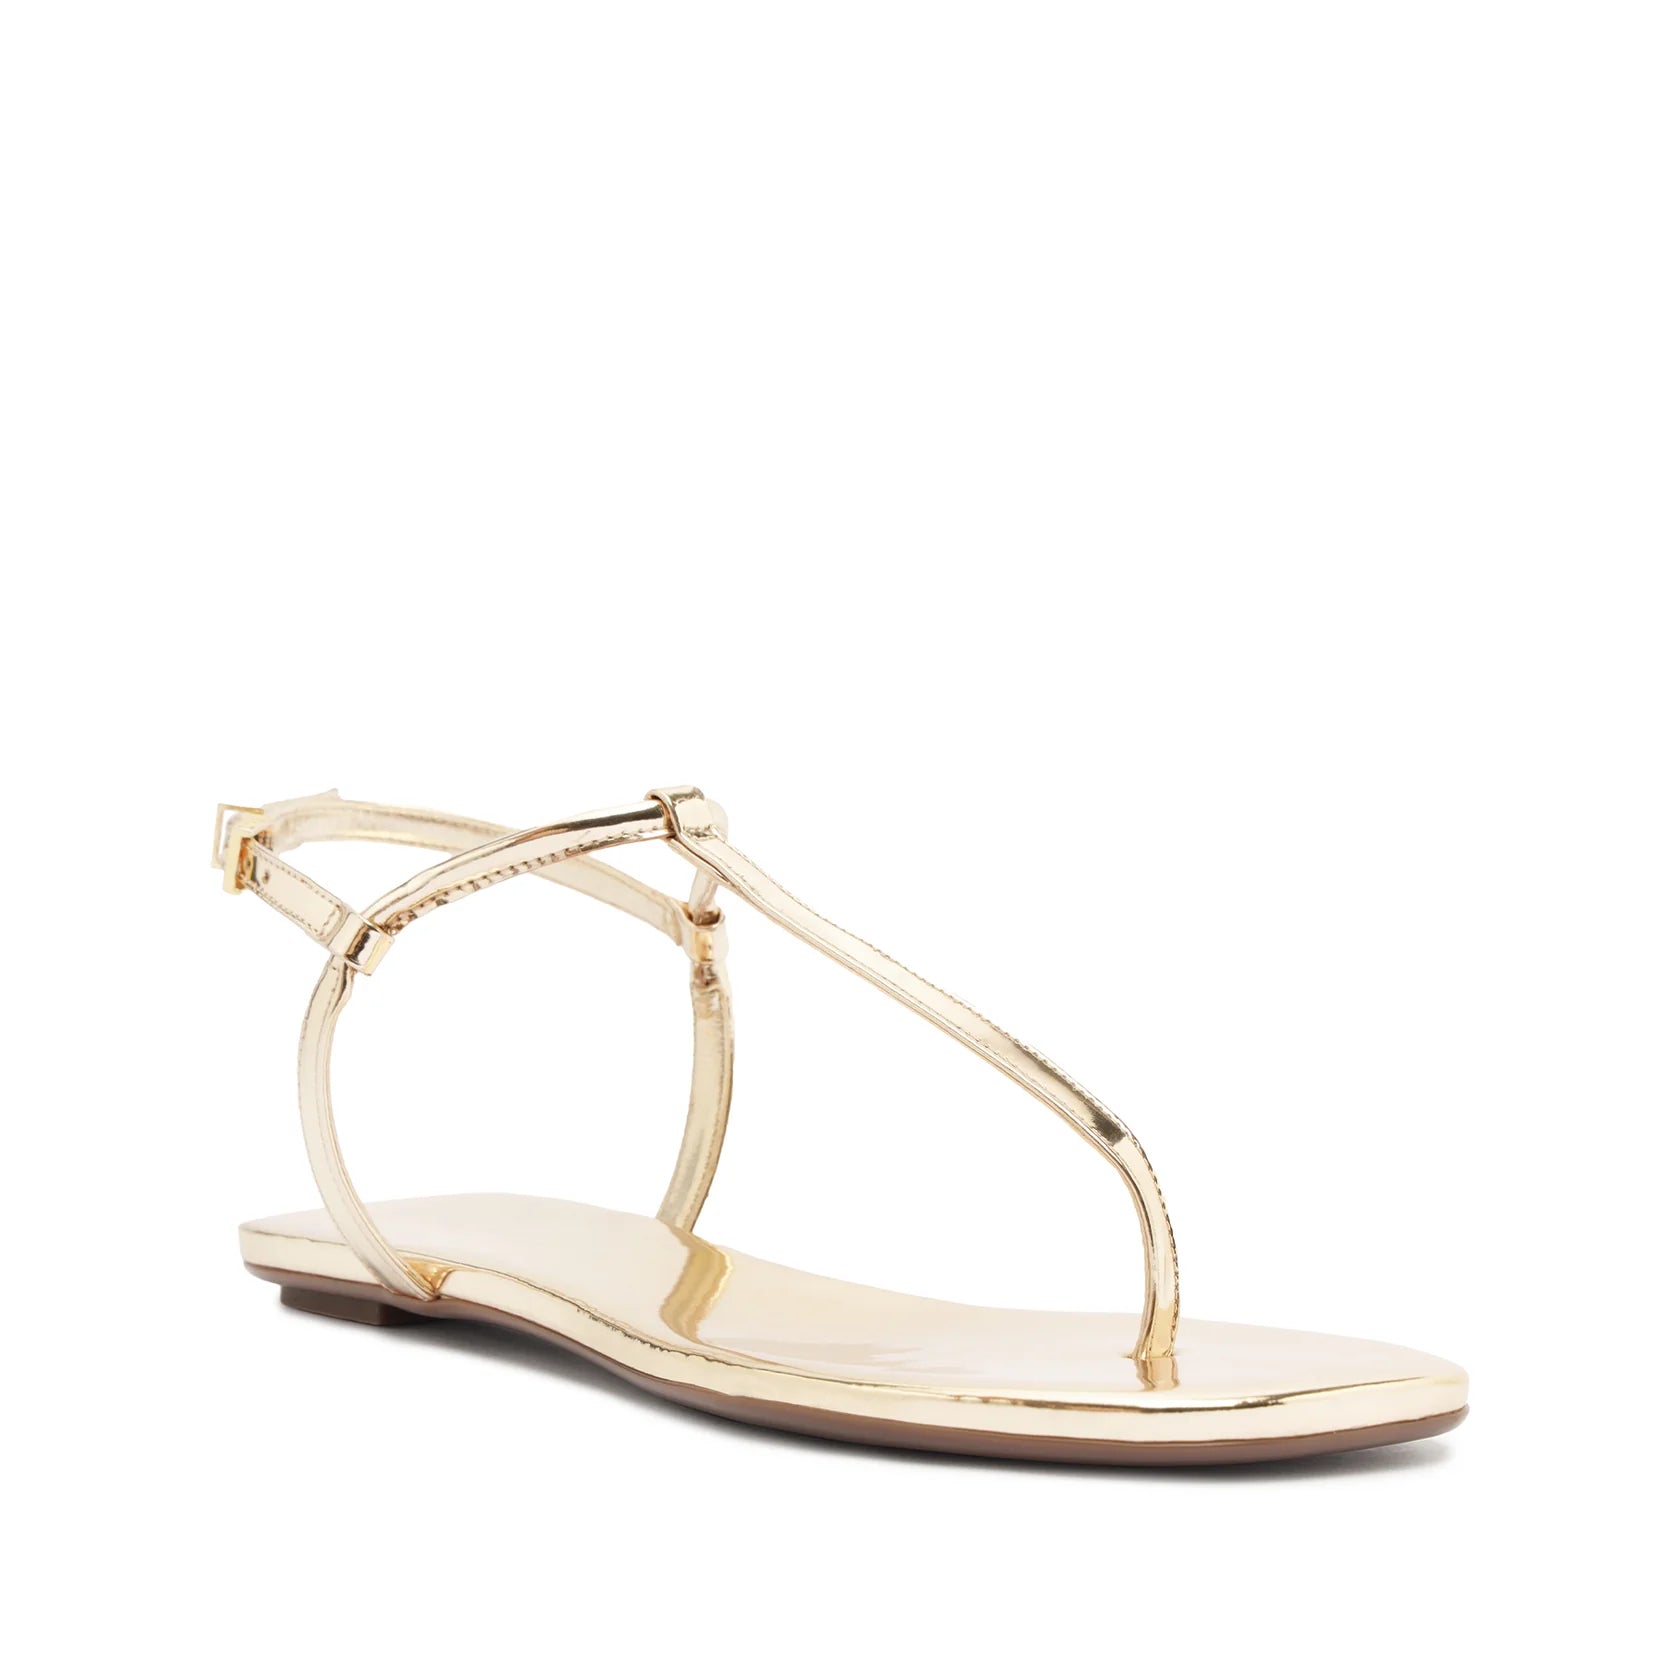 Schutz Elsha Flat Sandal in Gold - Estilo Boutique